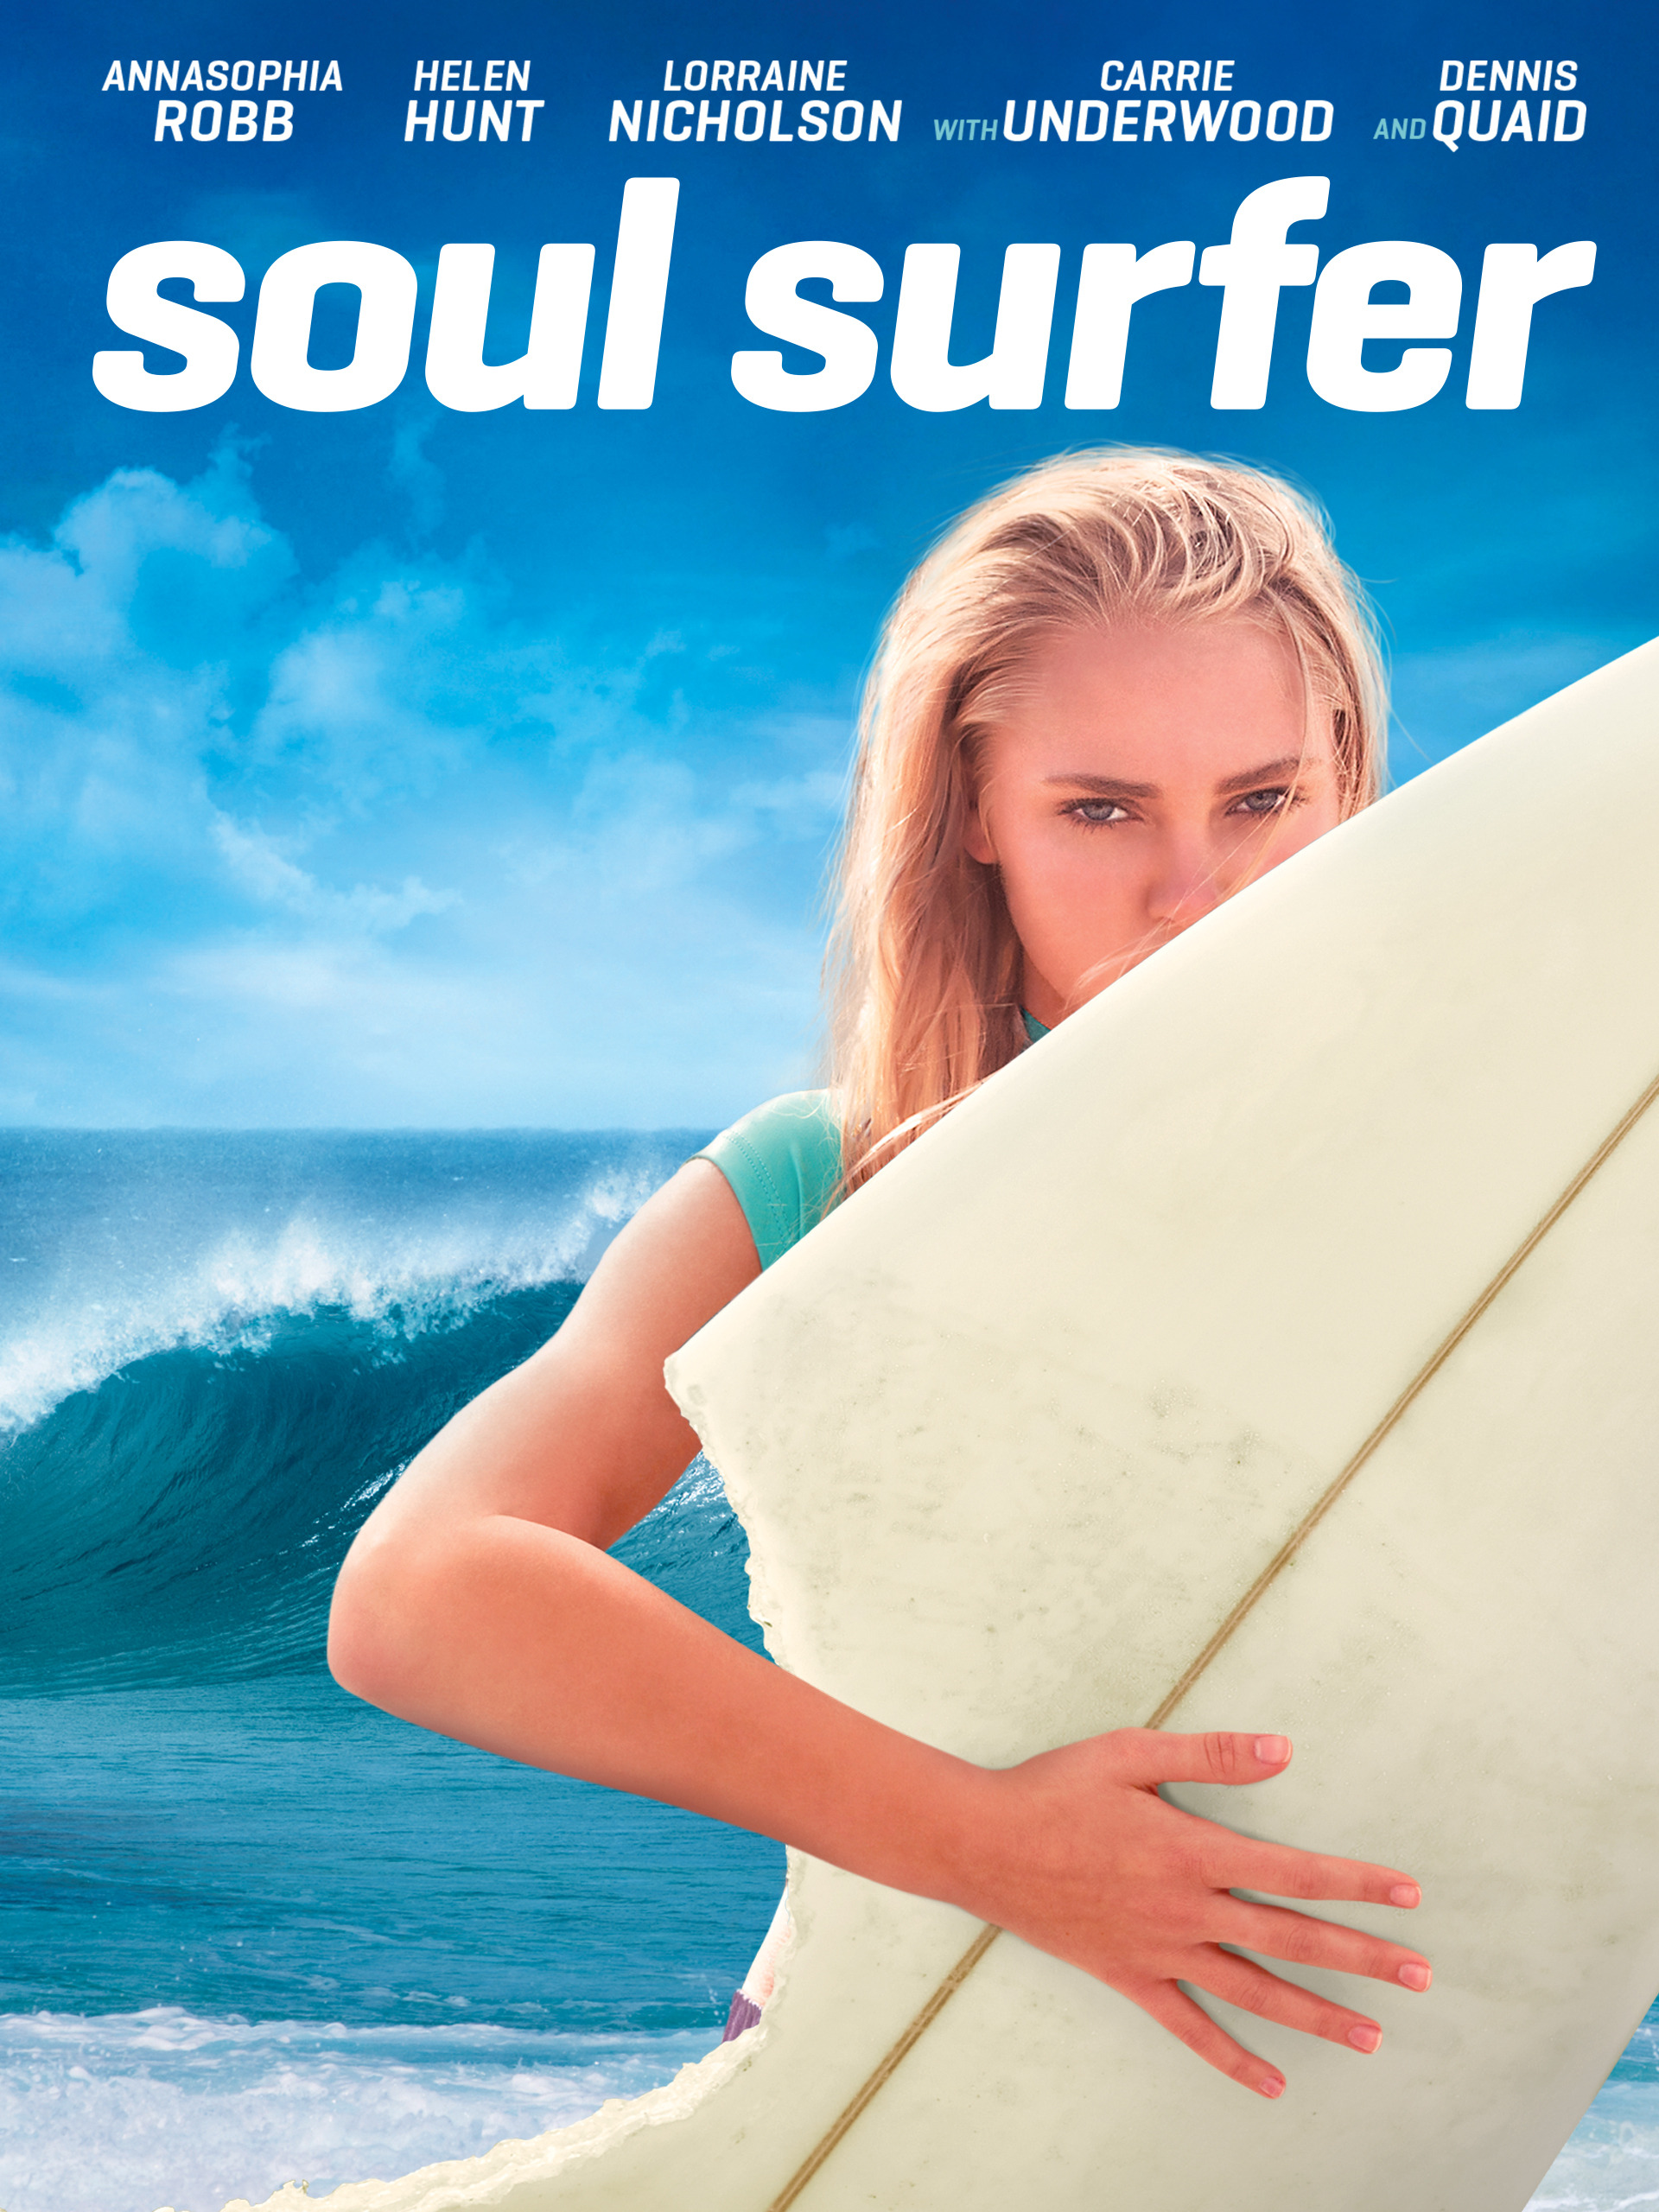 portada de la pelicula Soul Surfer, aparece una mujer sosteniendo una tabla de surf